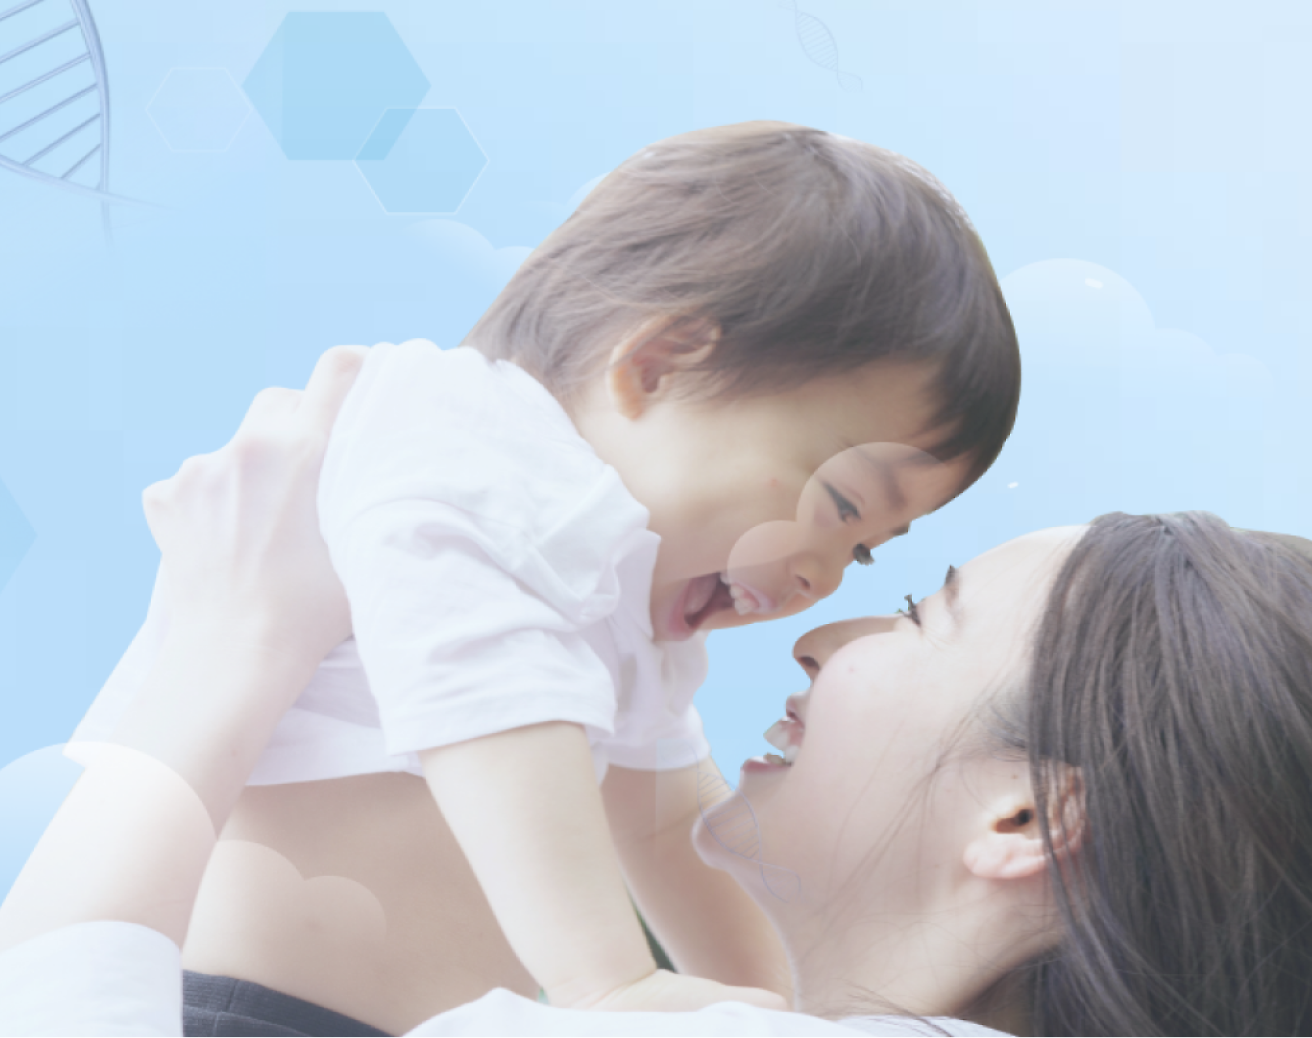 Et glad lille barn bliver holdt op i luften af sin mor, og begge smiler på en blød blå baggrund med lys grafik.